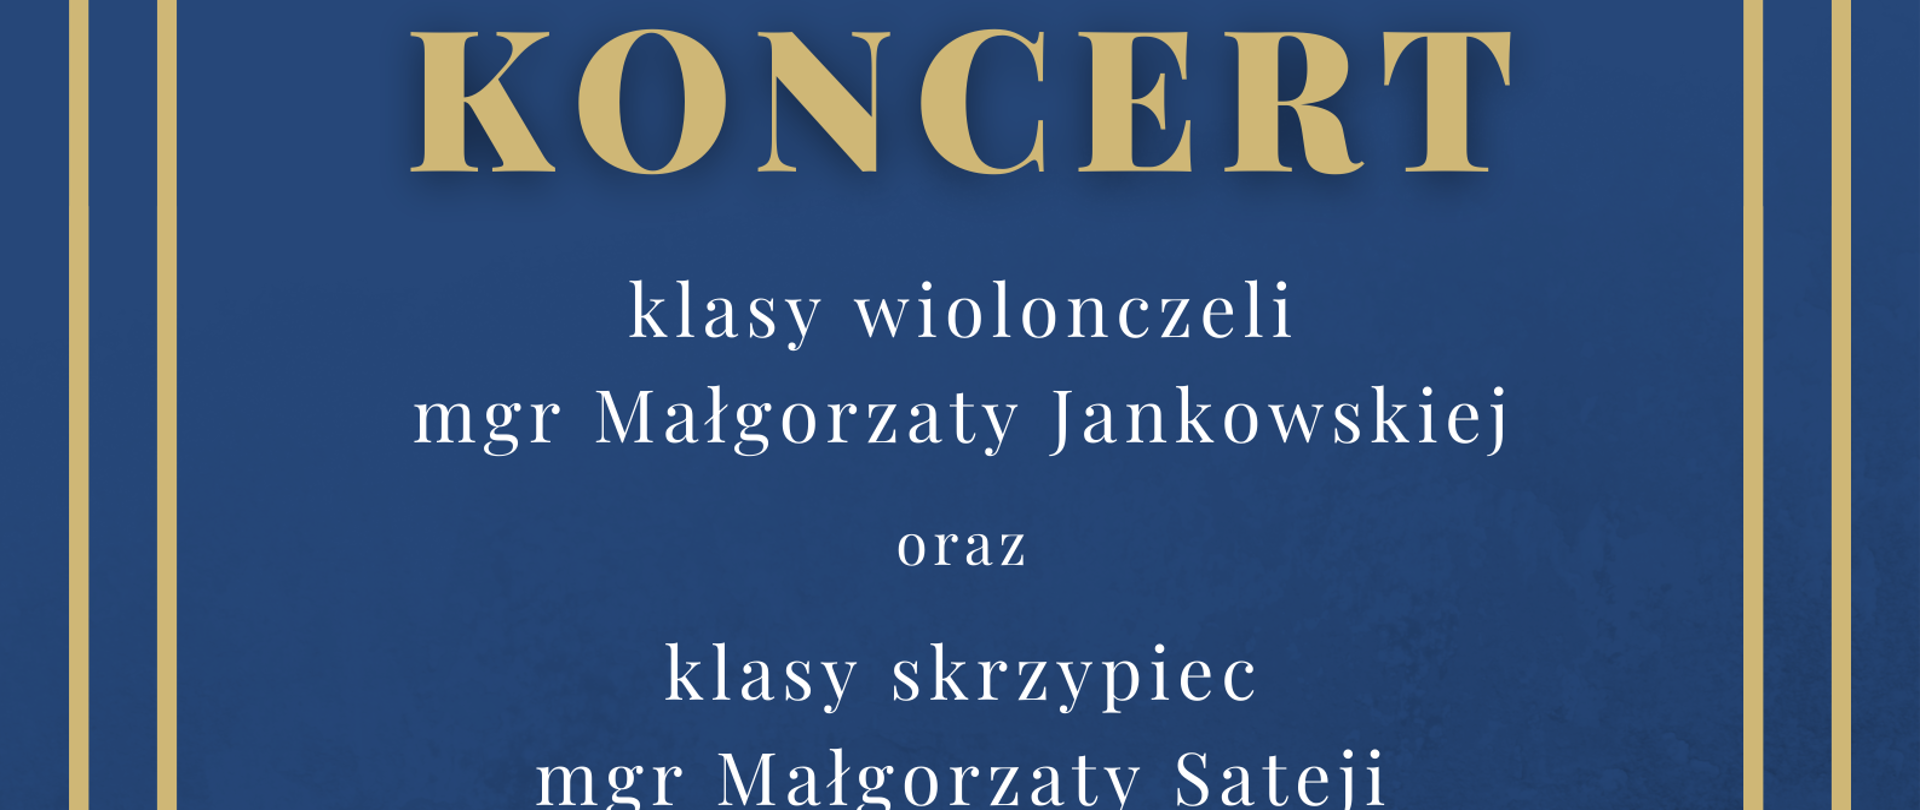 Plakat na granatowym tle w beżowej dużej ramce informacje dotyczące koncertu klasy wiolonczeli oraz klasy skrzypiec, który odbędzie się 14.12.2023 roku o godzinie 17:00. Pośrodku rysunki przedstawiające z lewej strony skrzypce a z prawej strony wiolonczelę.